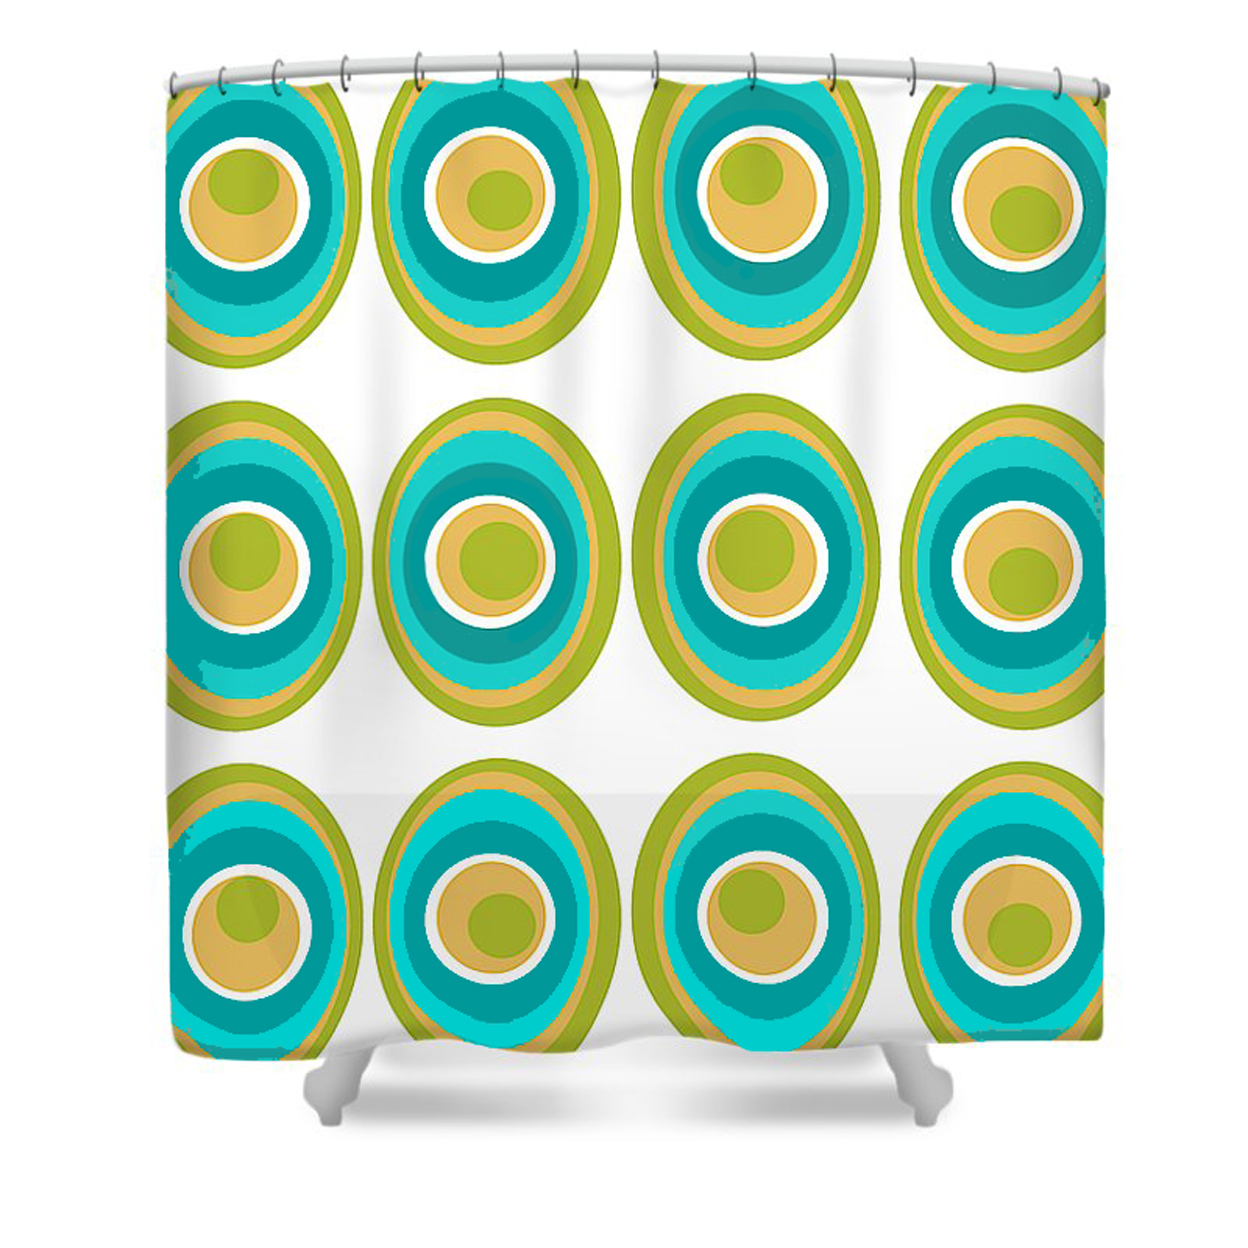 Shower Curtain - Crash Pad Designs Adam